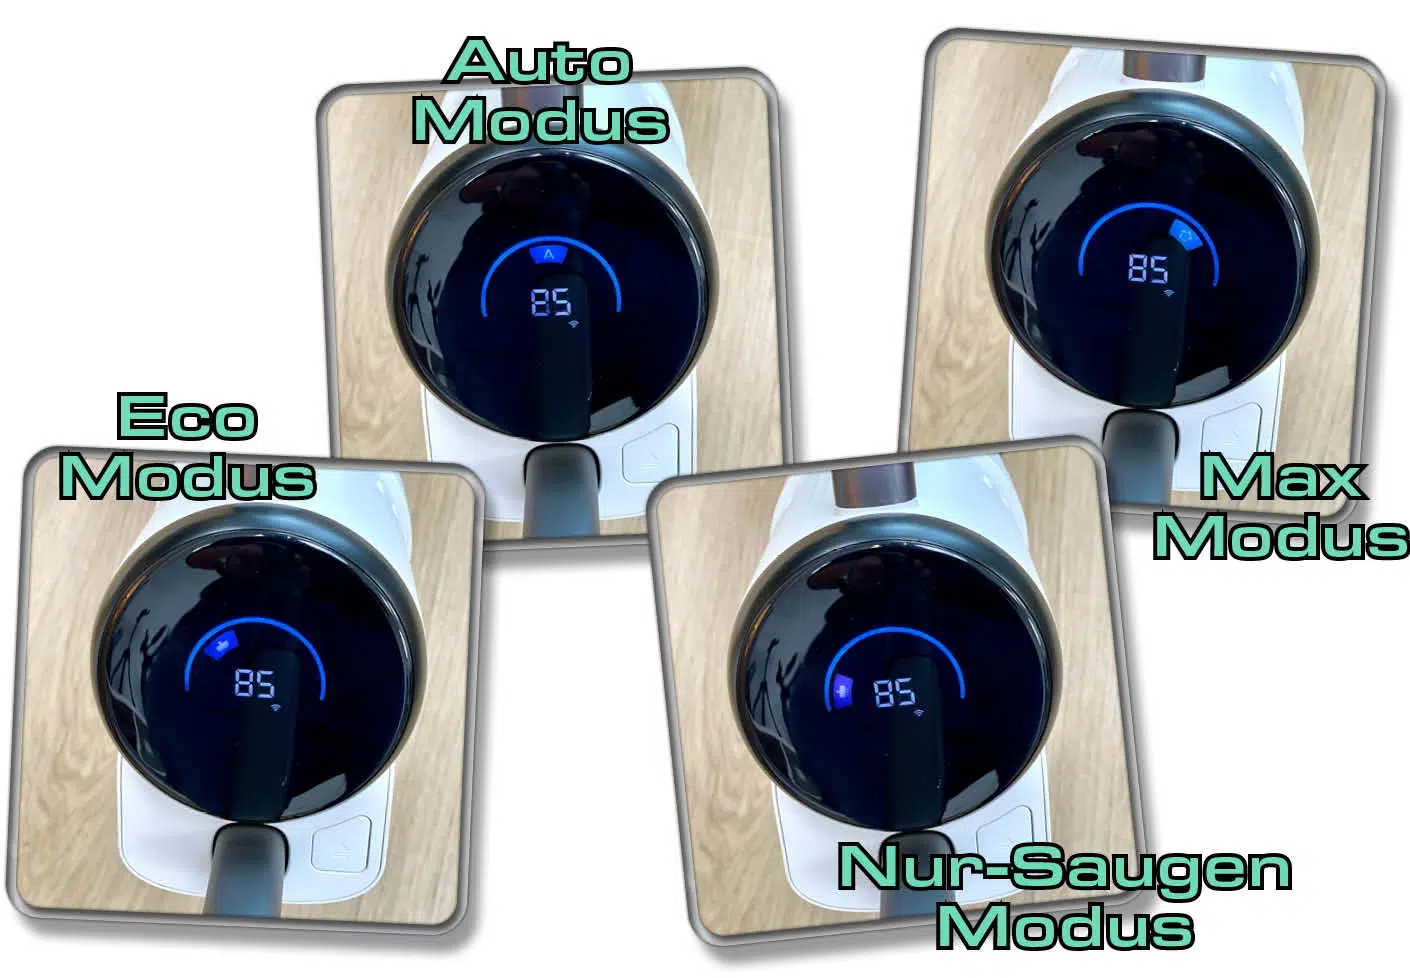 Der Roborock Dyad Pro Combo verfügt über verschiedene Modi, die über die Knöpfe eingestellt werden können